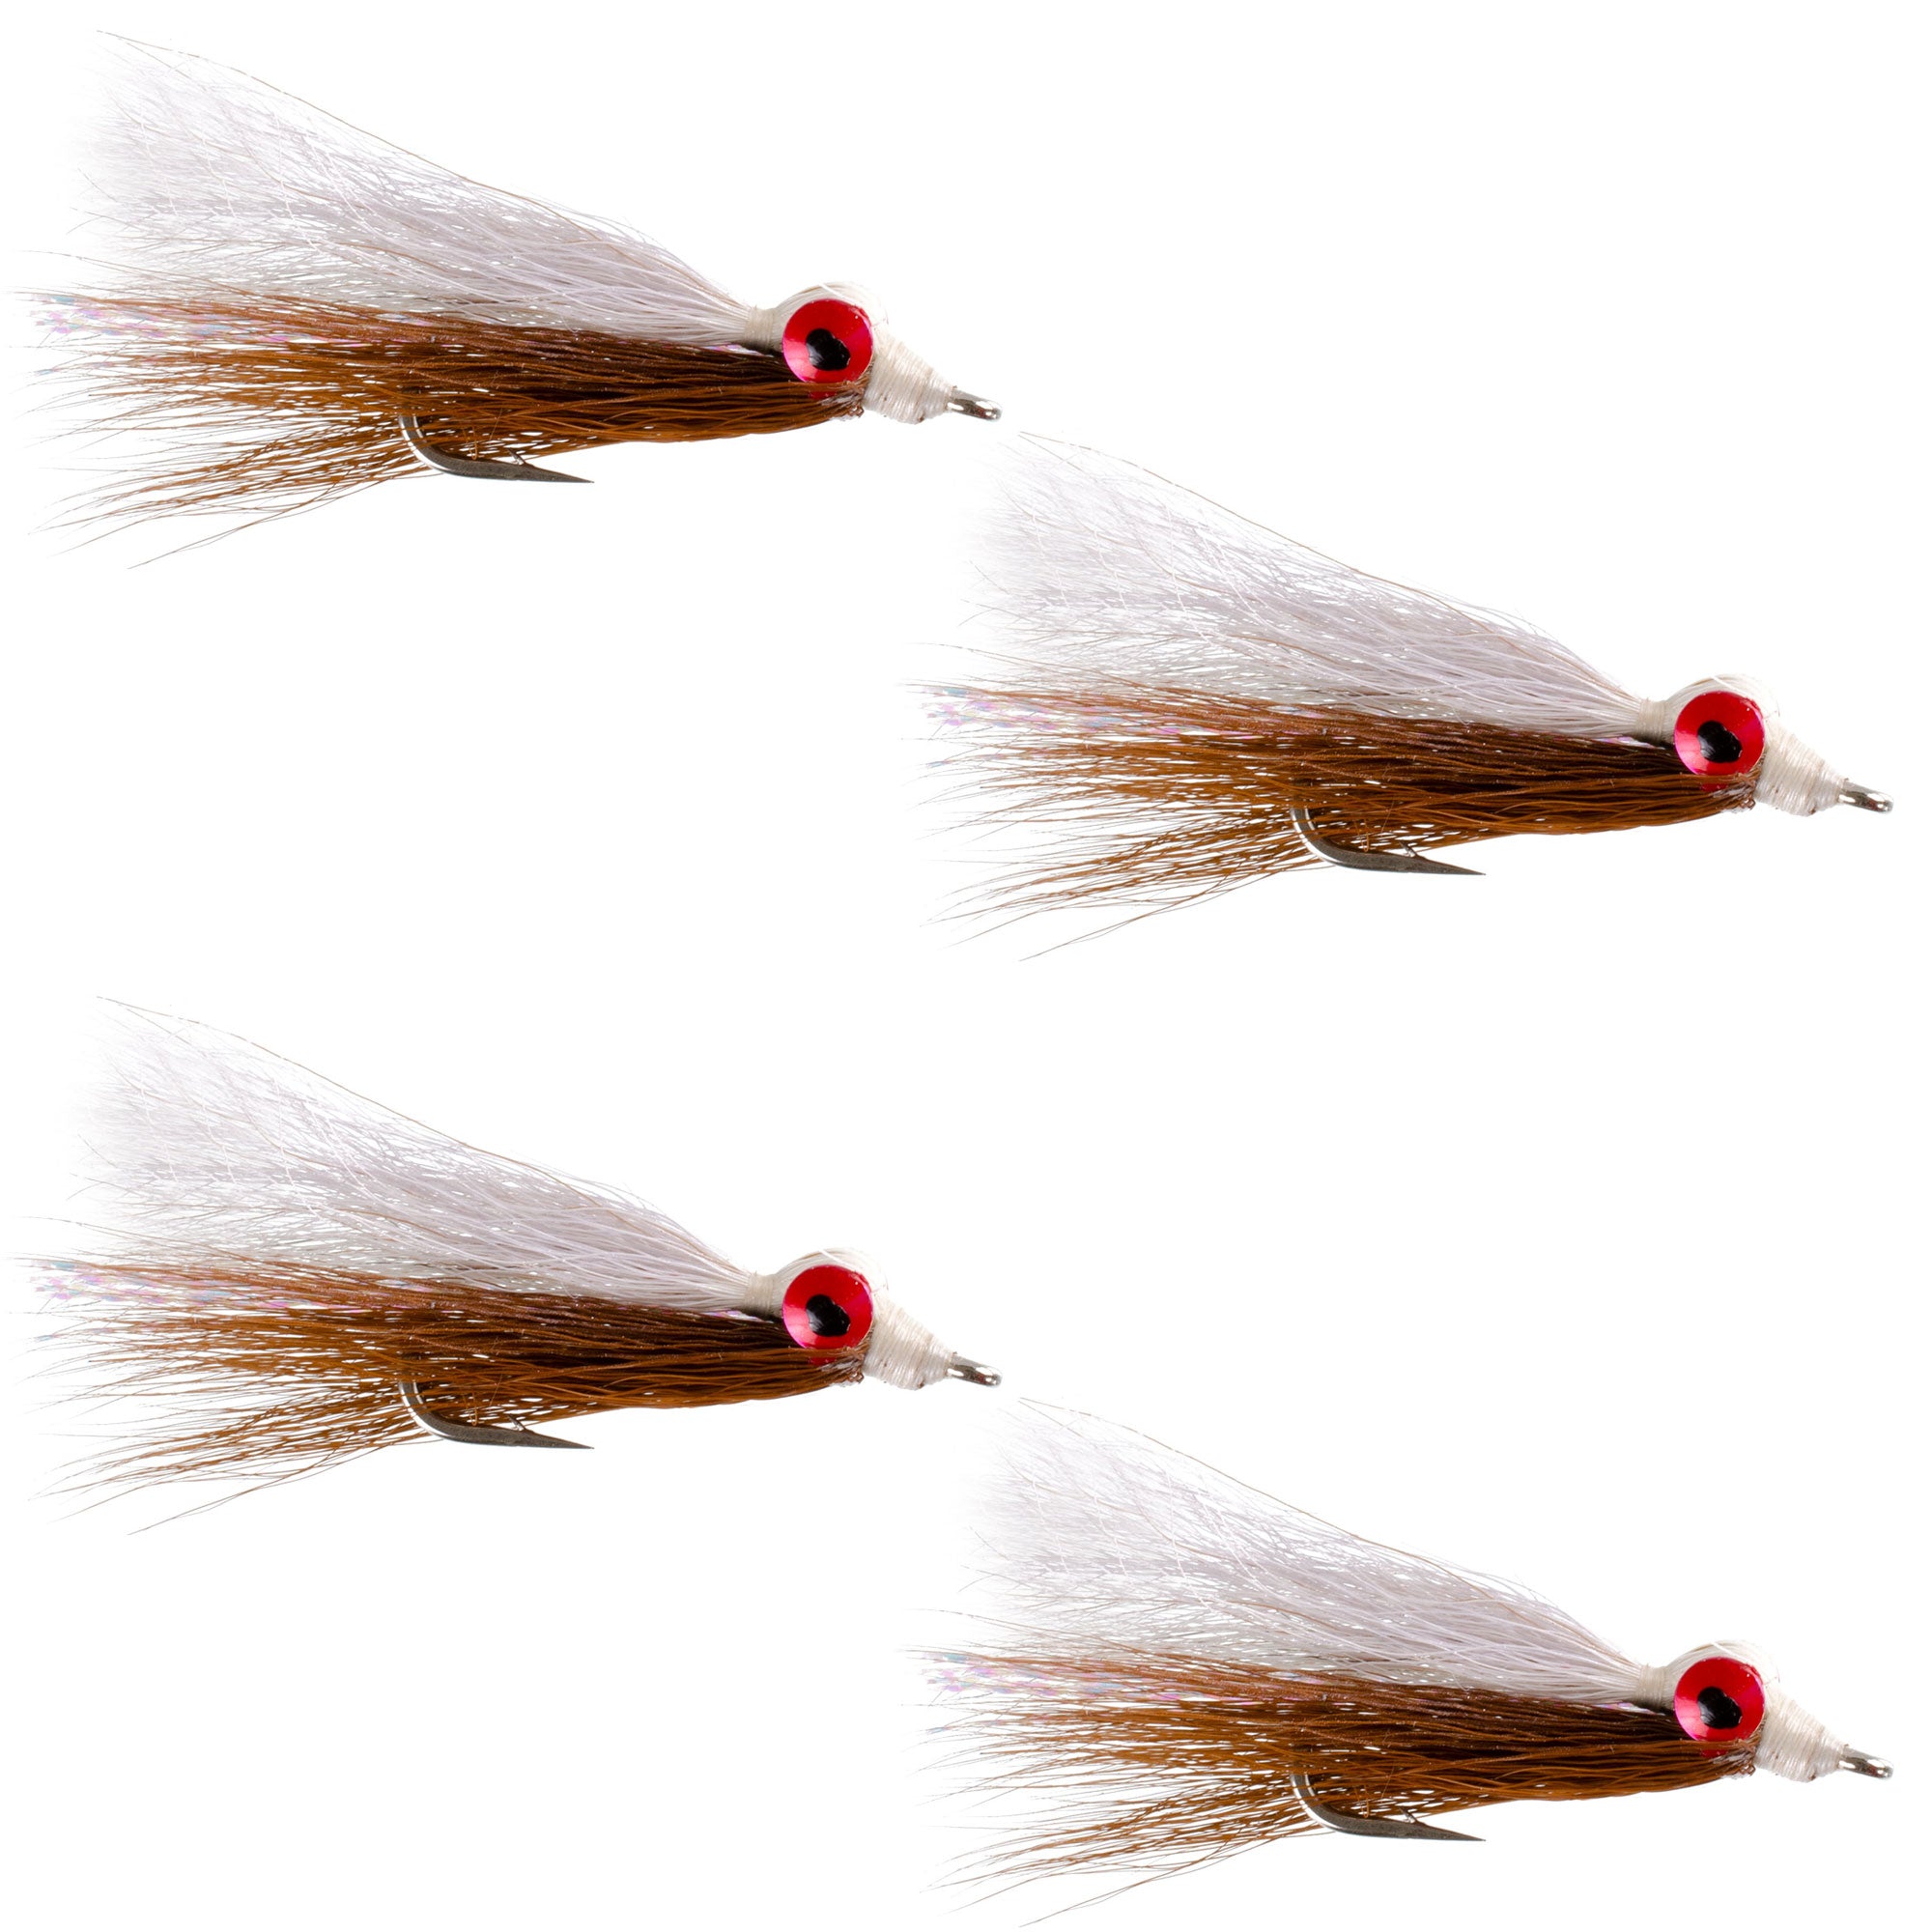 Clousers Deep Minnow Brown White - Moscas de pesca con mosca Streamer - 4 moscas de agua salada y lubina - Tamaño del anzuelo 1/0 